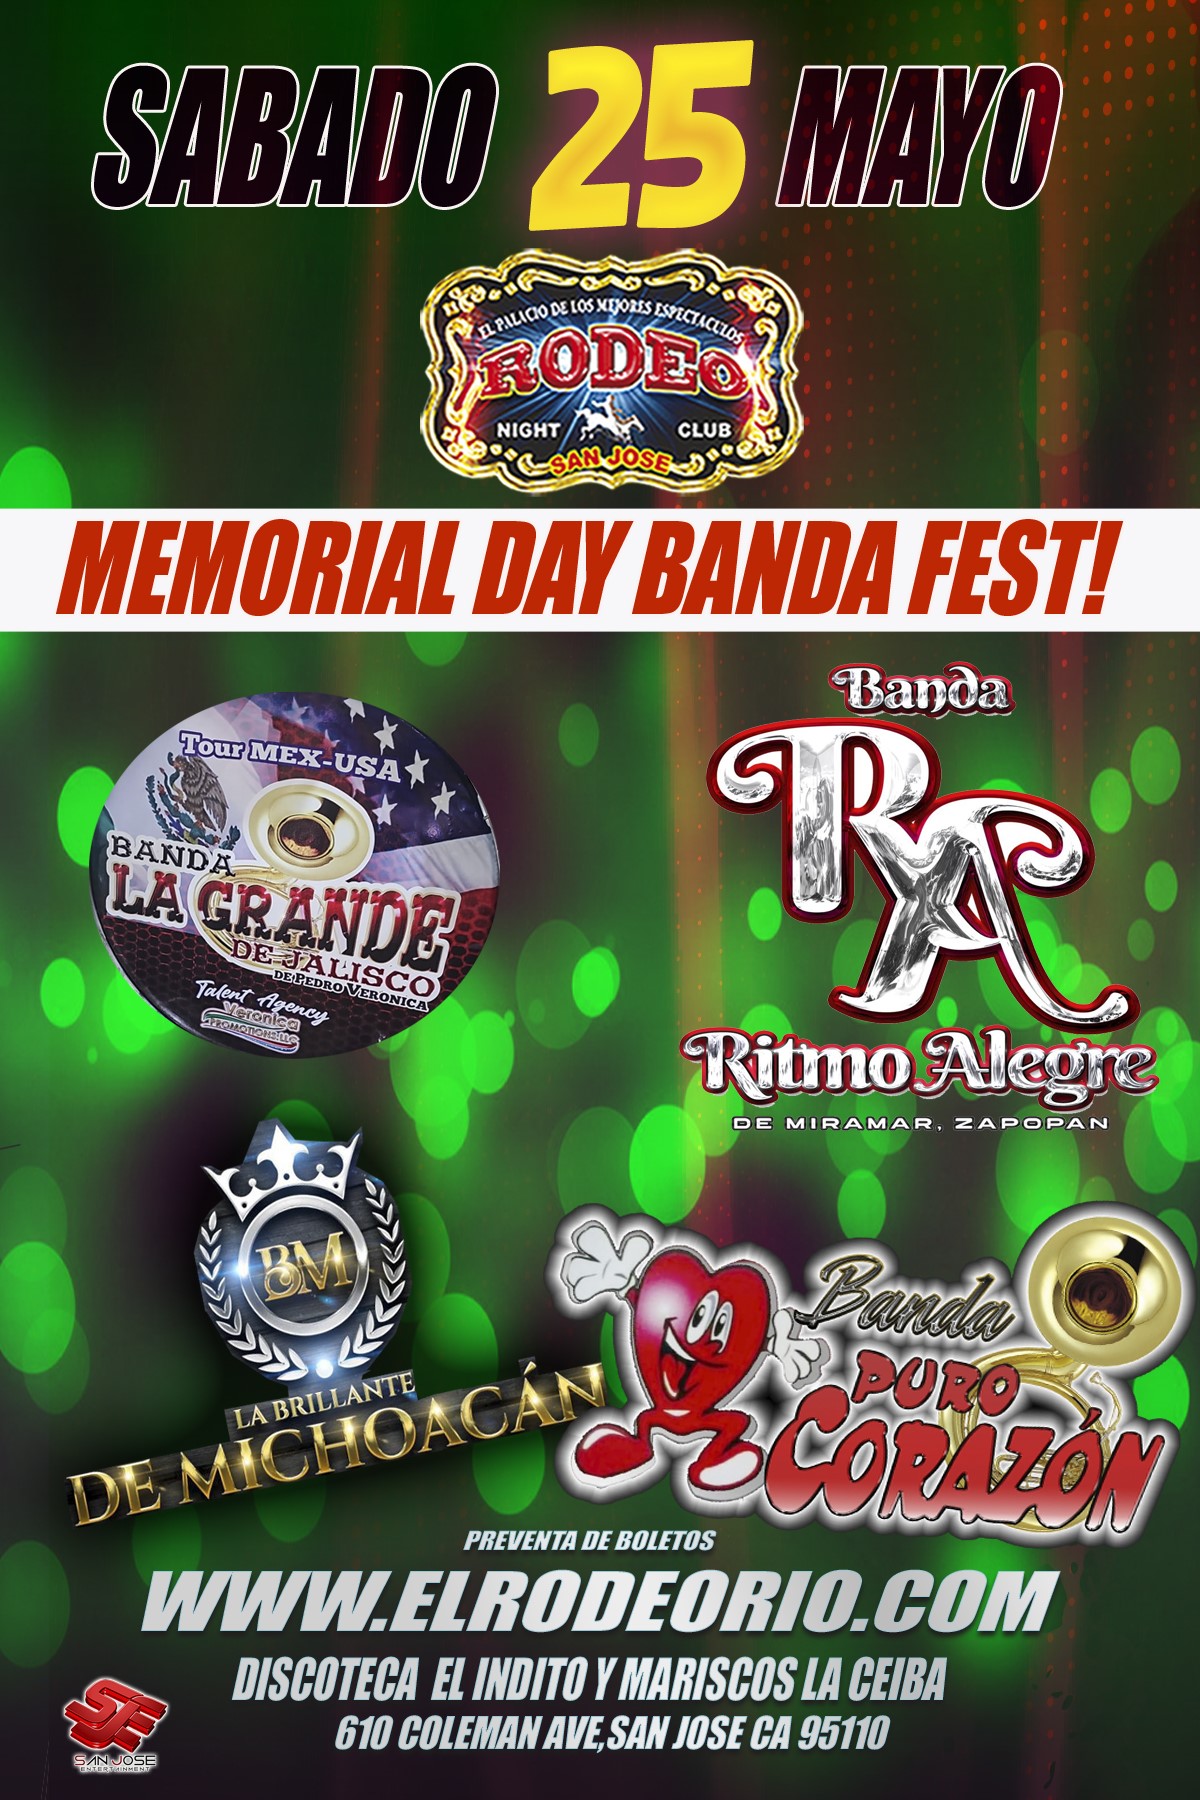 Memorial Day Banda Fest!  on mai 25, 21:00@Club Rodeo - Achetez des billets et obtenez des informations surelrodeorio.com sanjoseentertainment